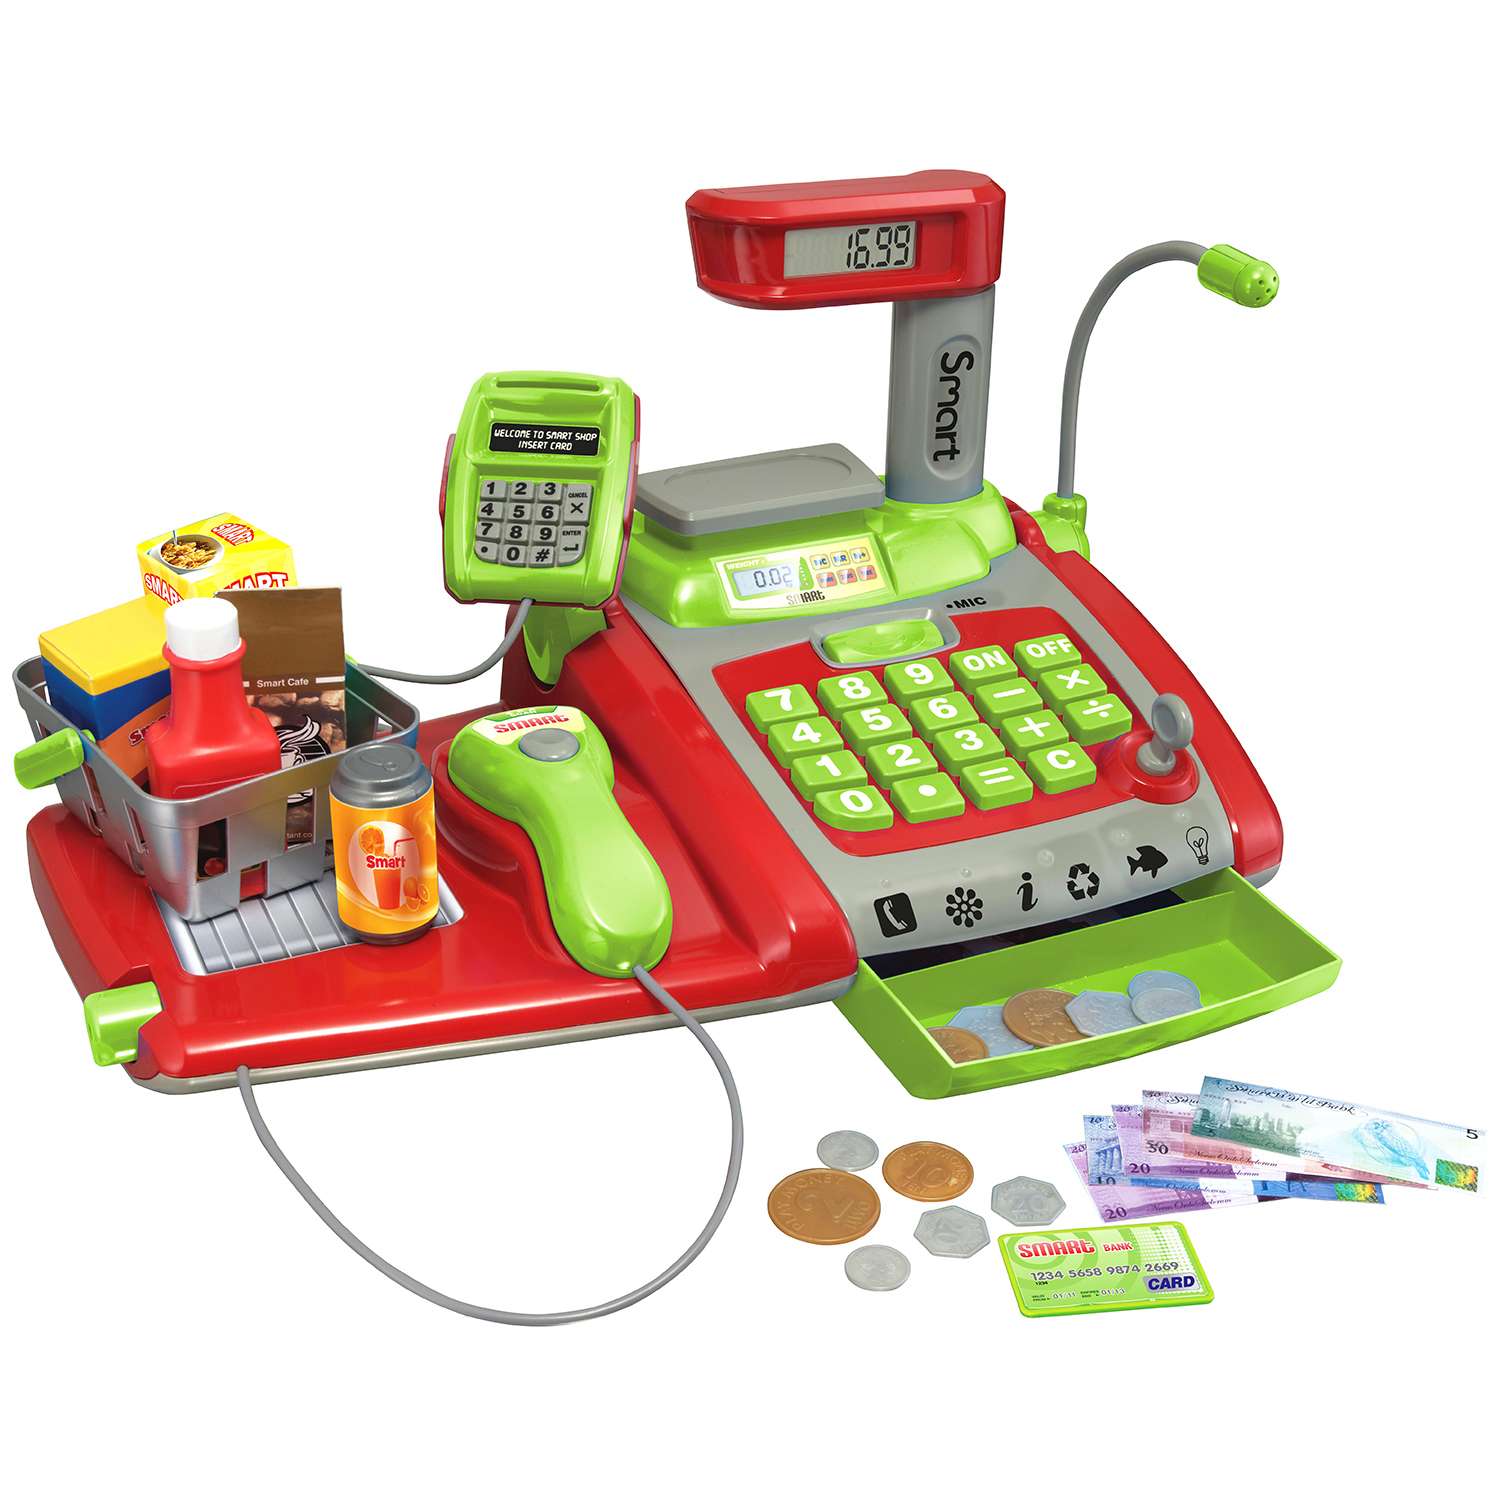 Игра касса в магазине. Кассовый аппарат 66028. Детская касса HTI Smart. Игрушечная касса. Кассовый аппарат для детей.